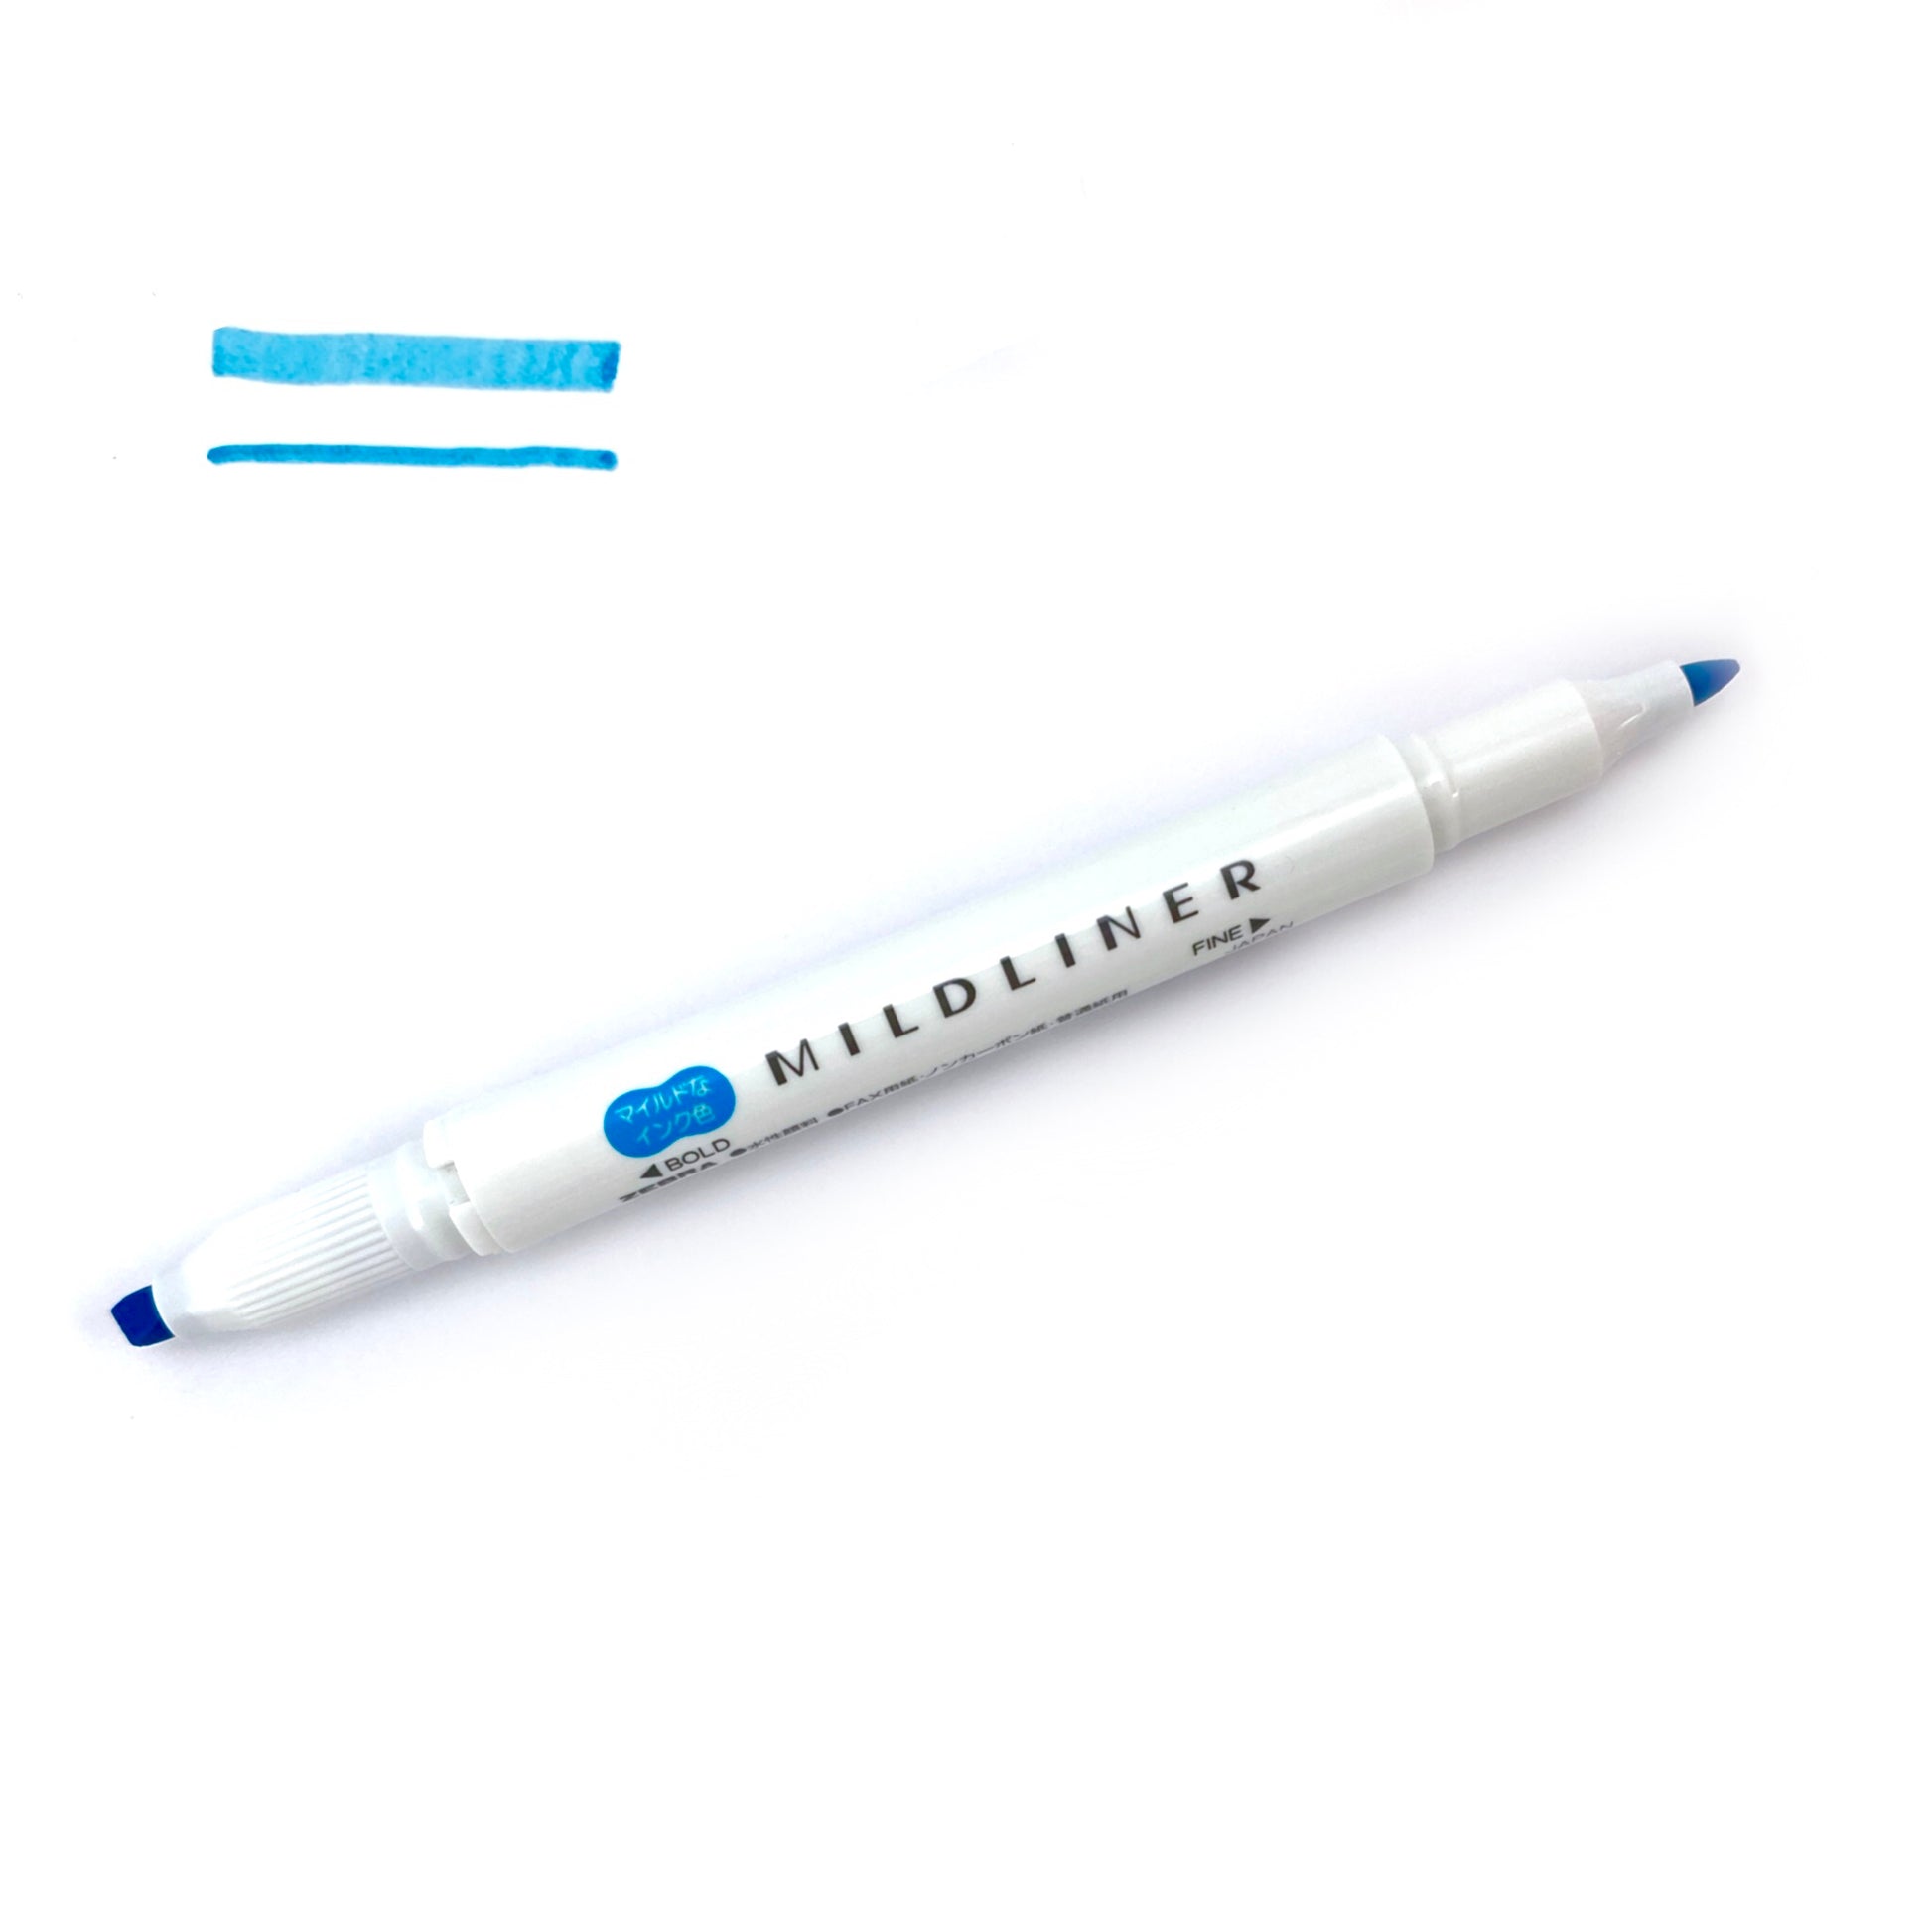 Zebra Mildliner Double Ended Highlighter Pen Mild Smoke Blue